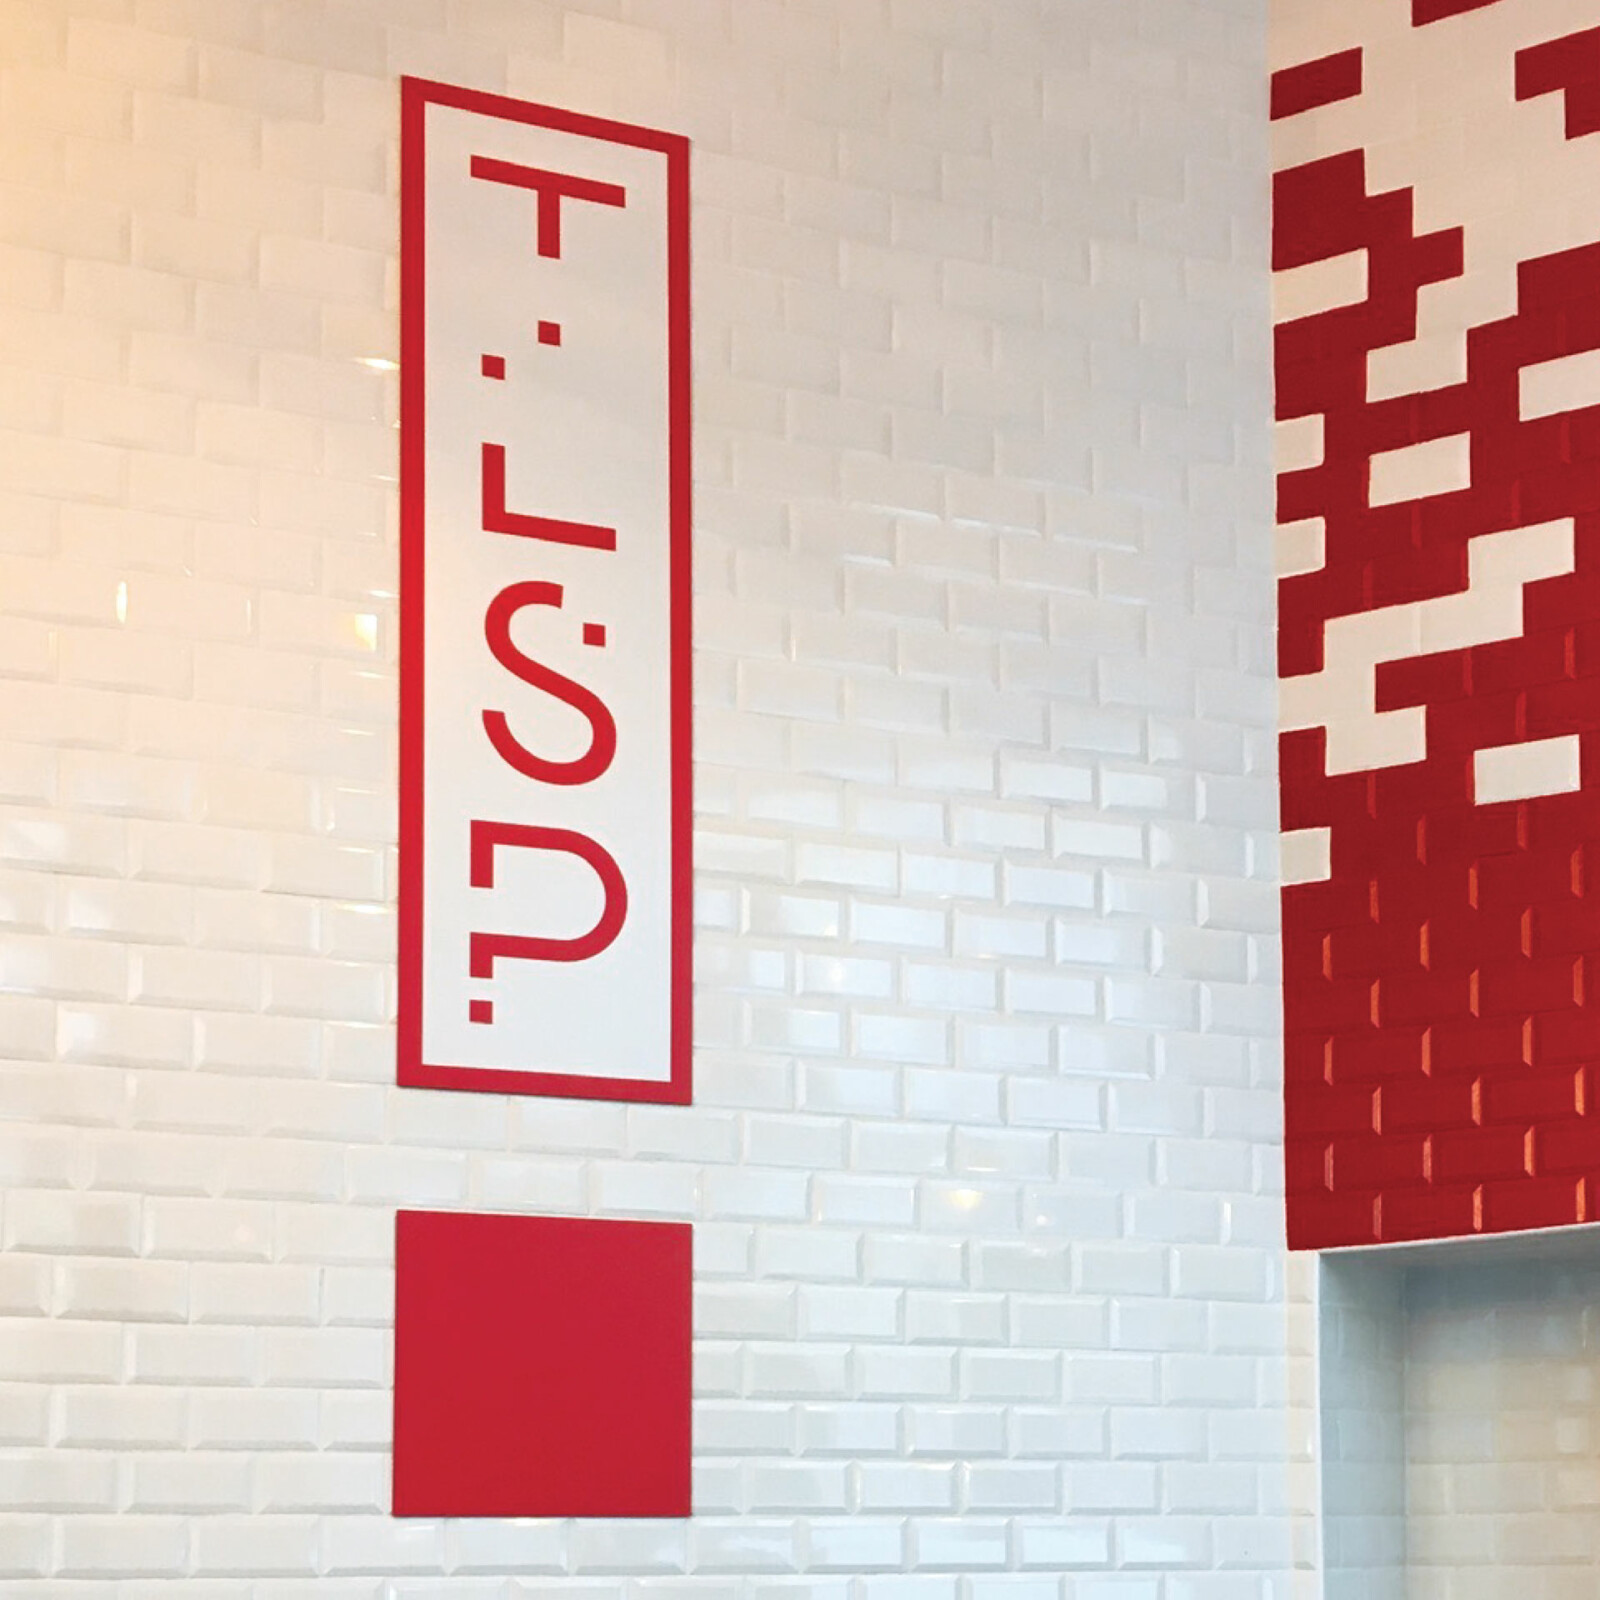 Photo du logo TLSP imprimé sur Dibond, collé au mur, dans un rectangle blanc, un carré rouge sous celui-ci crée un point d’exclamation, le carrelage rouge et blanc est visible.